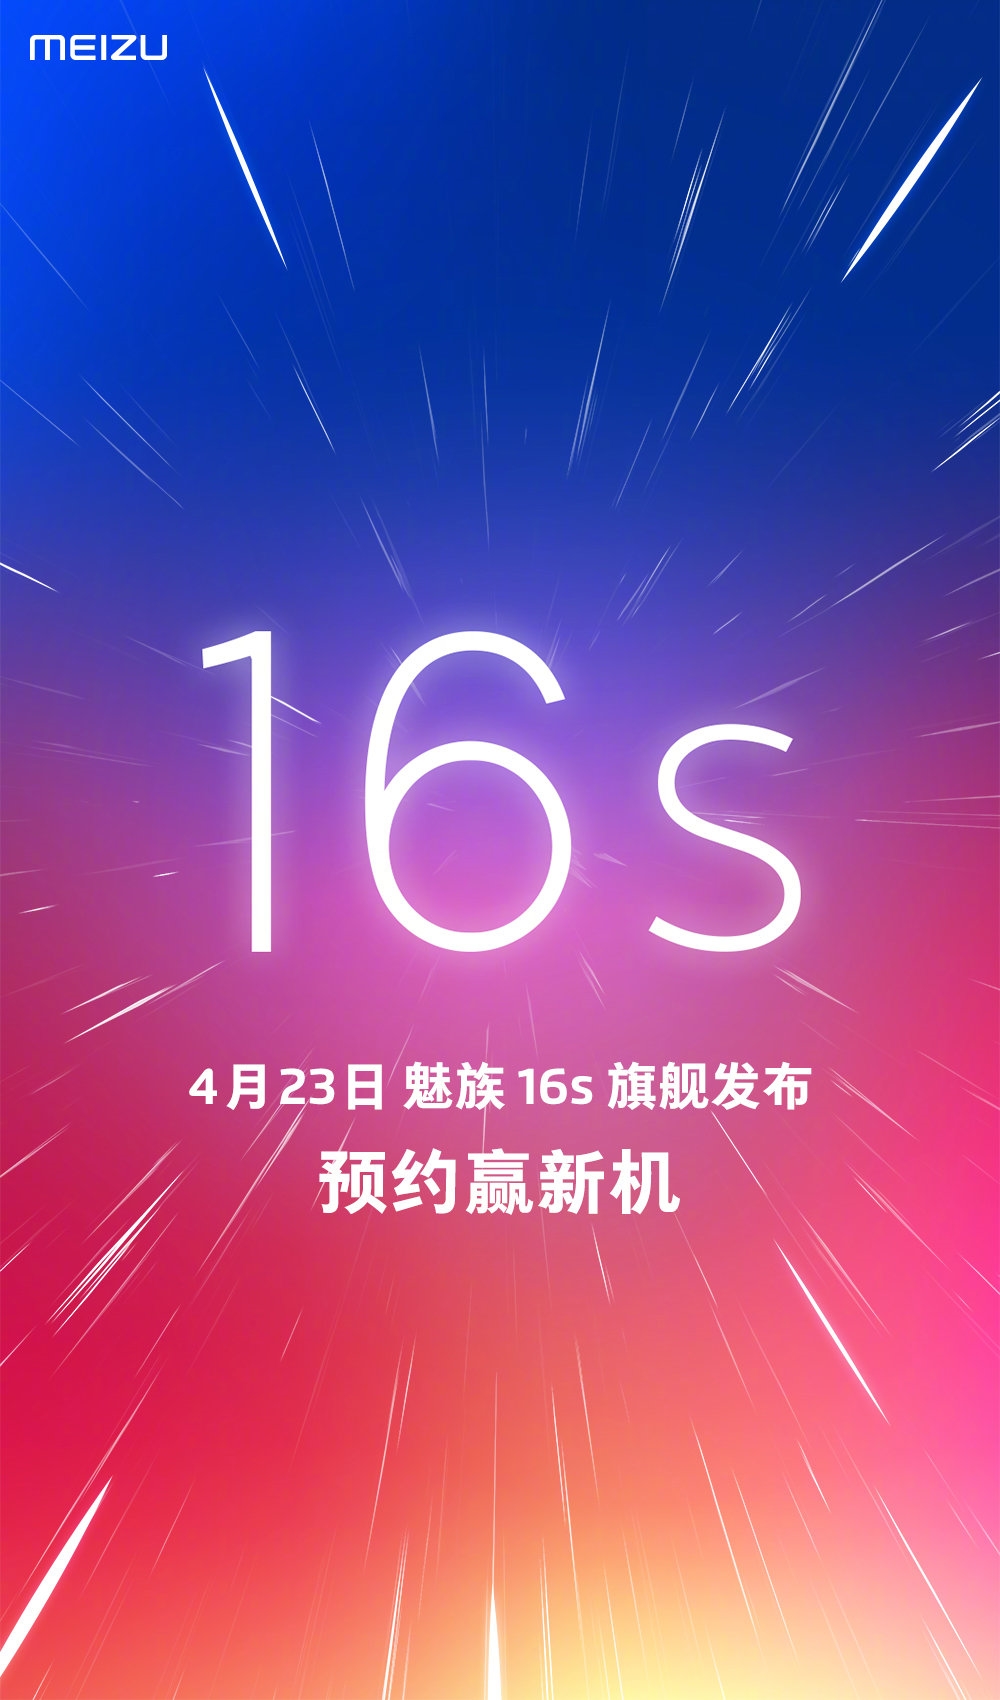 Meizu 16s Launch Date